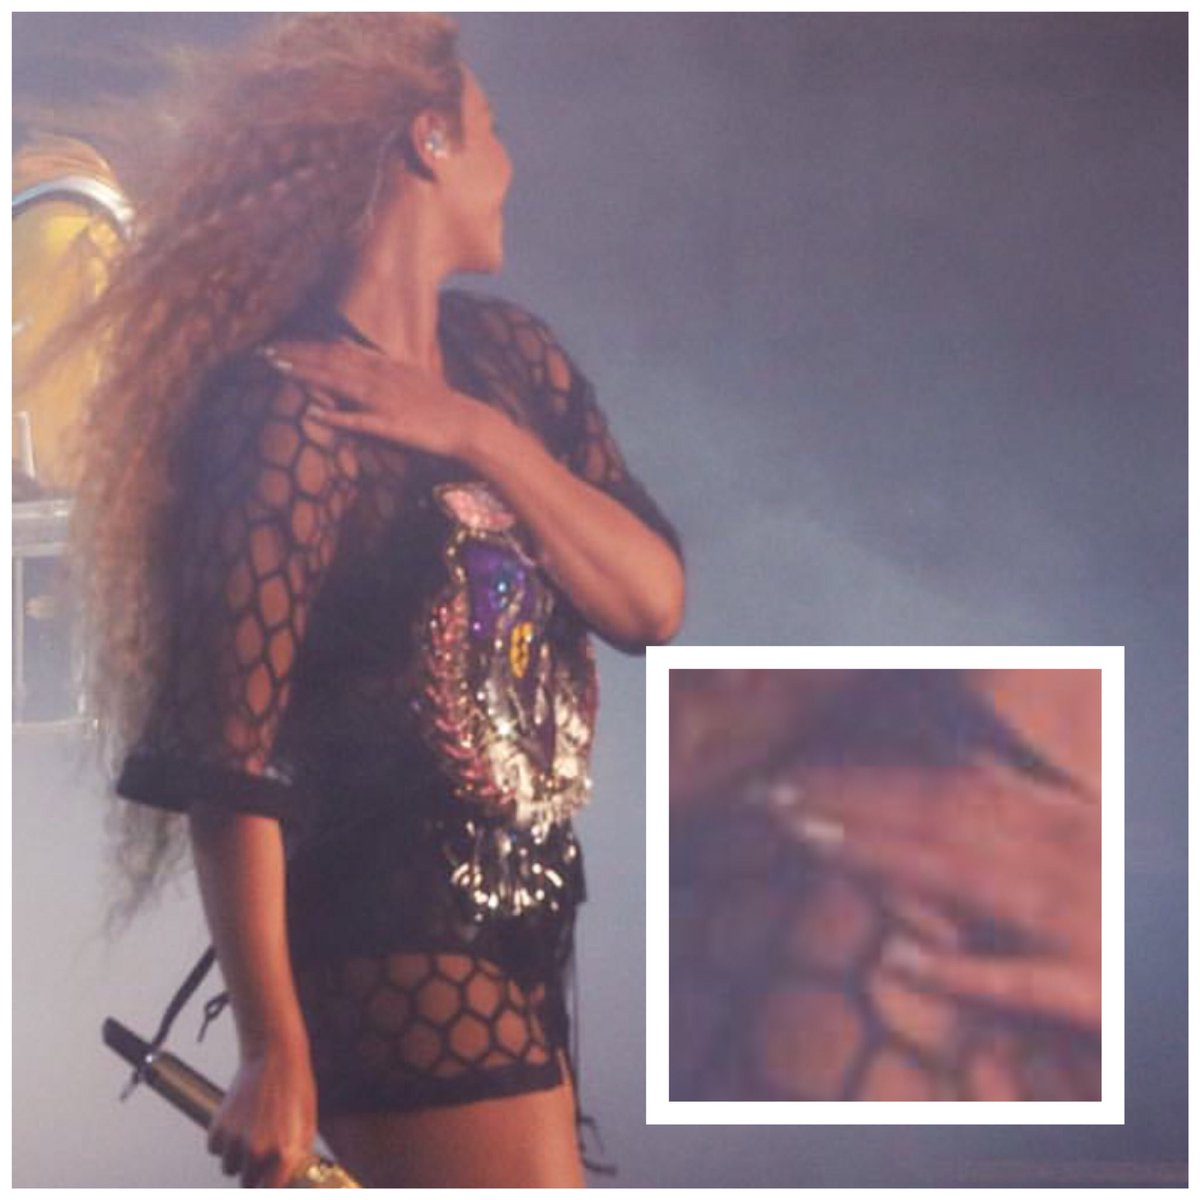 Internautas ficam intrigados após Beyoncé mudar o esmalte durante troca de roupa na apresentação do #Coachella: 'Eram duas Beyoncés performando' bit.ly/2HDftBz